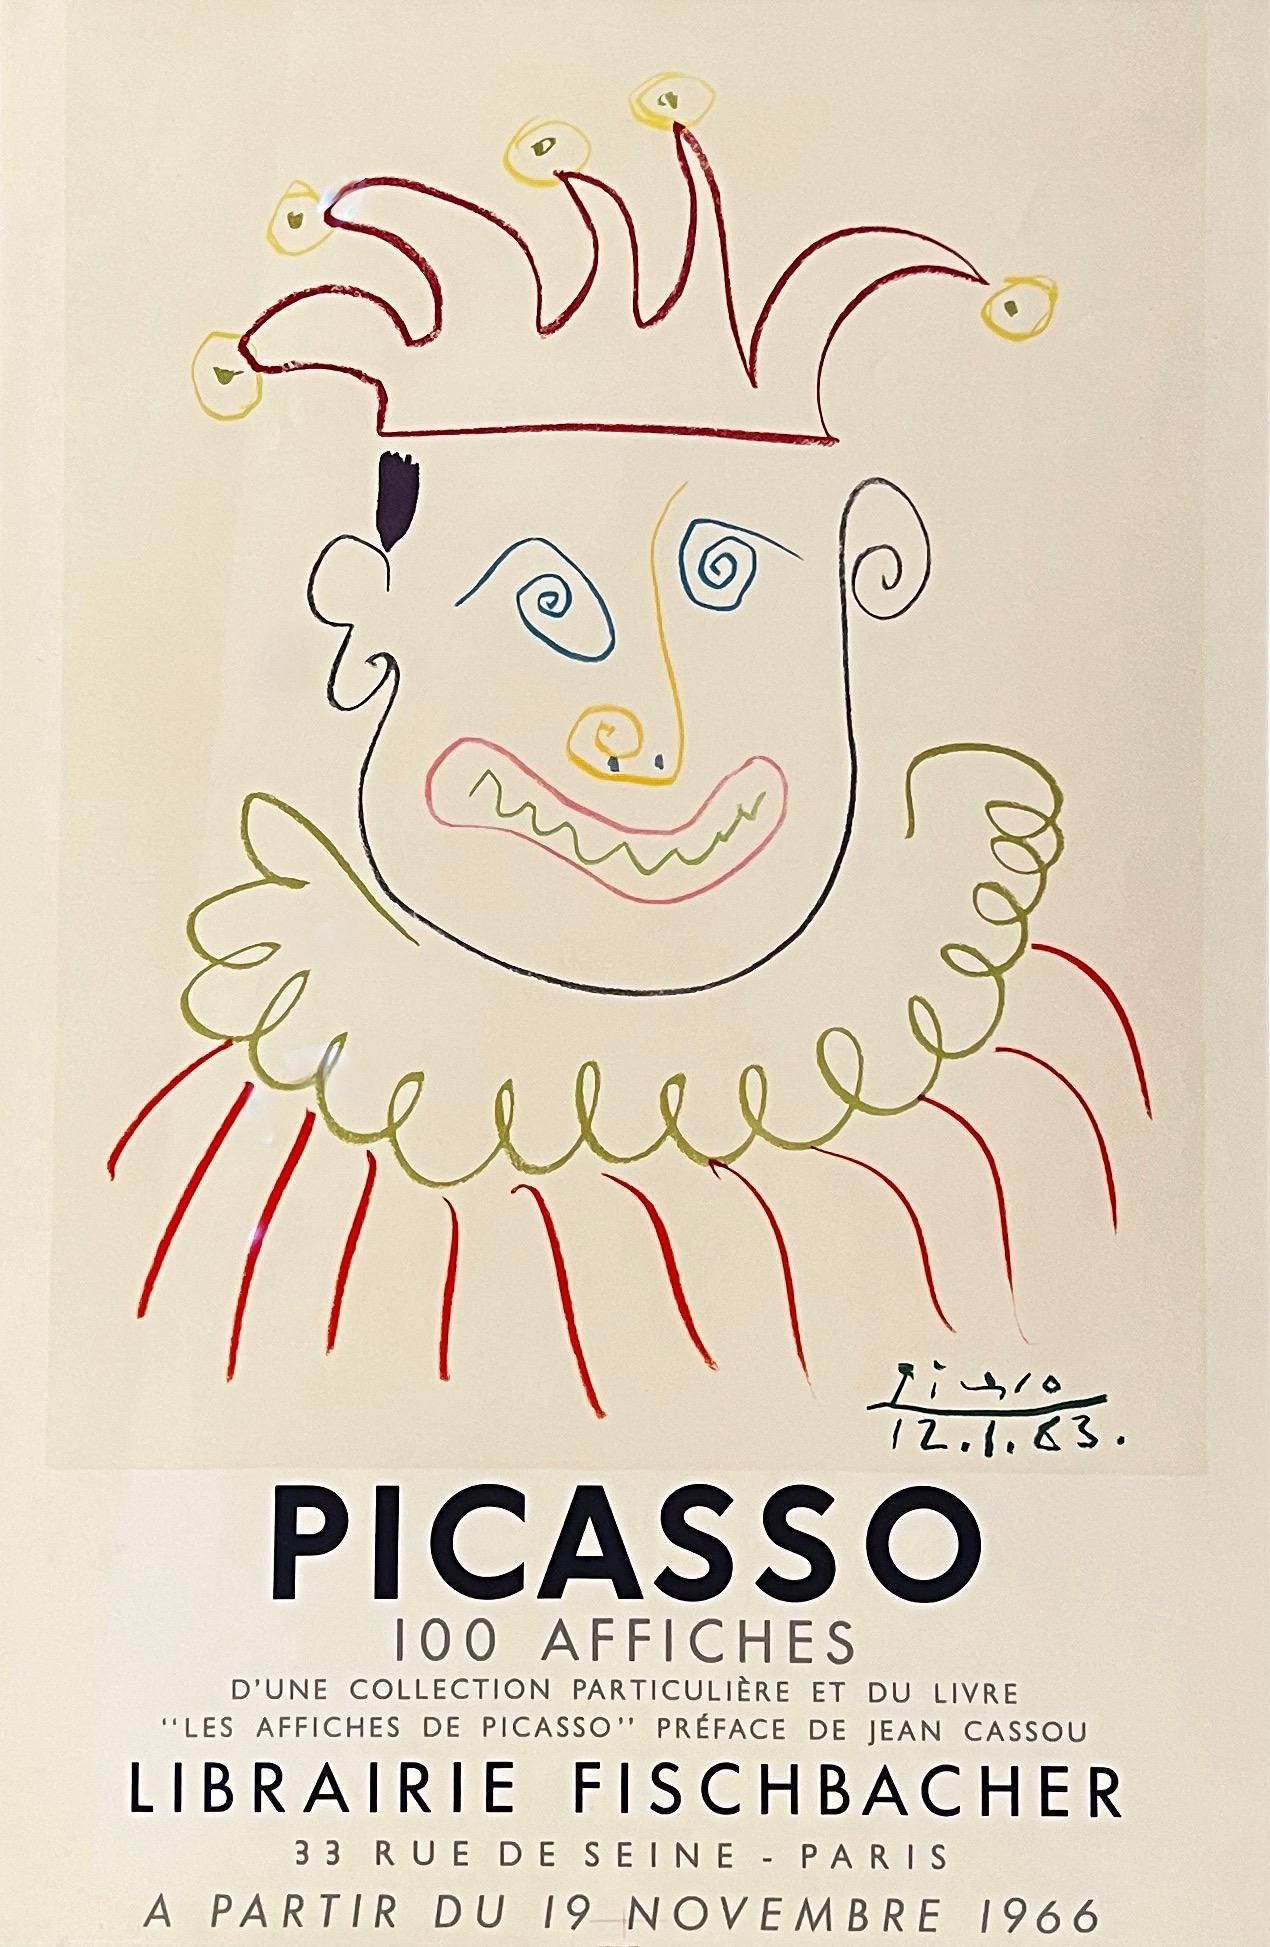 Pablo Picasso Figurative Print - Affiche pour la Librairie Fischbachter Parisa - attractive unique Picasso piece